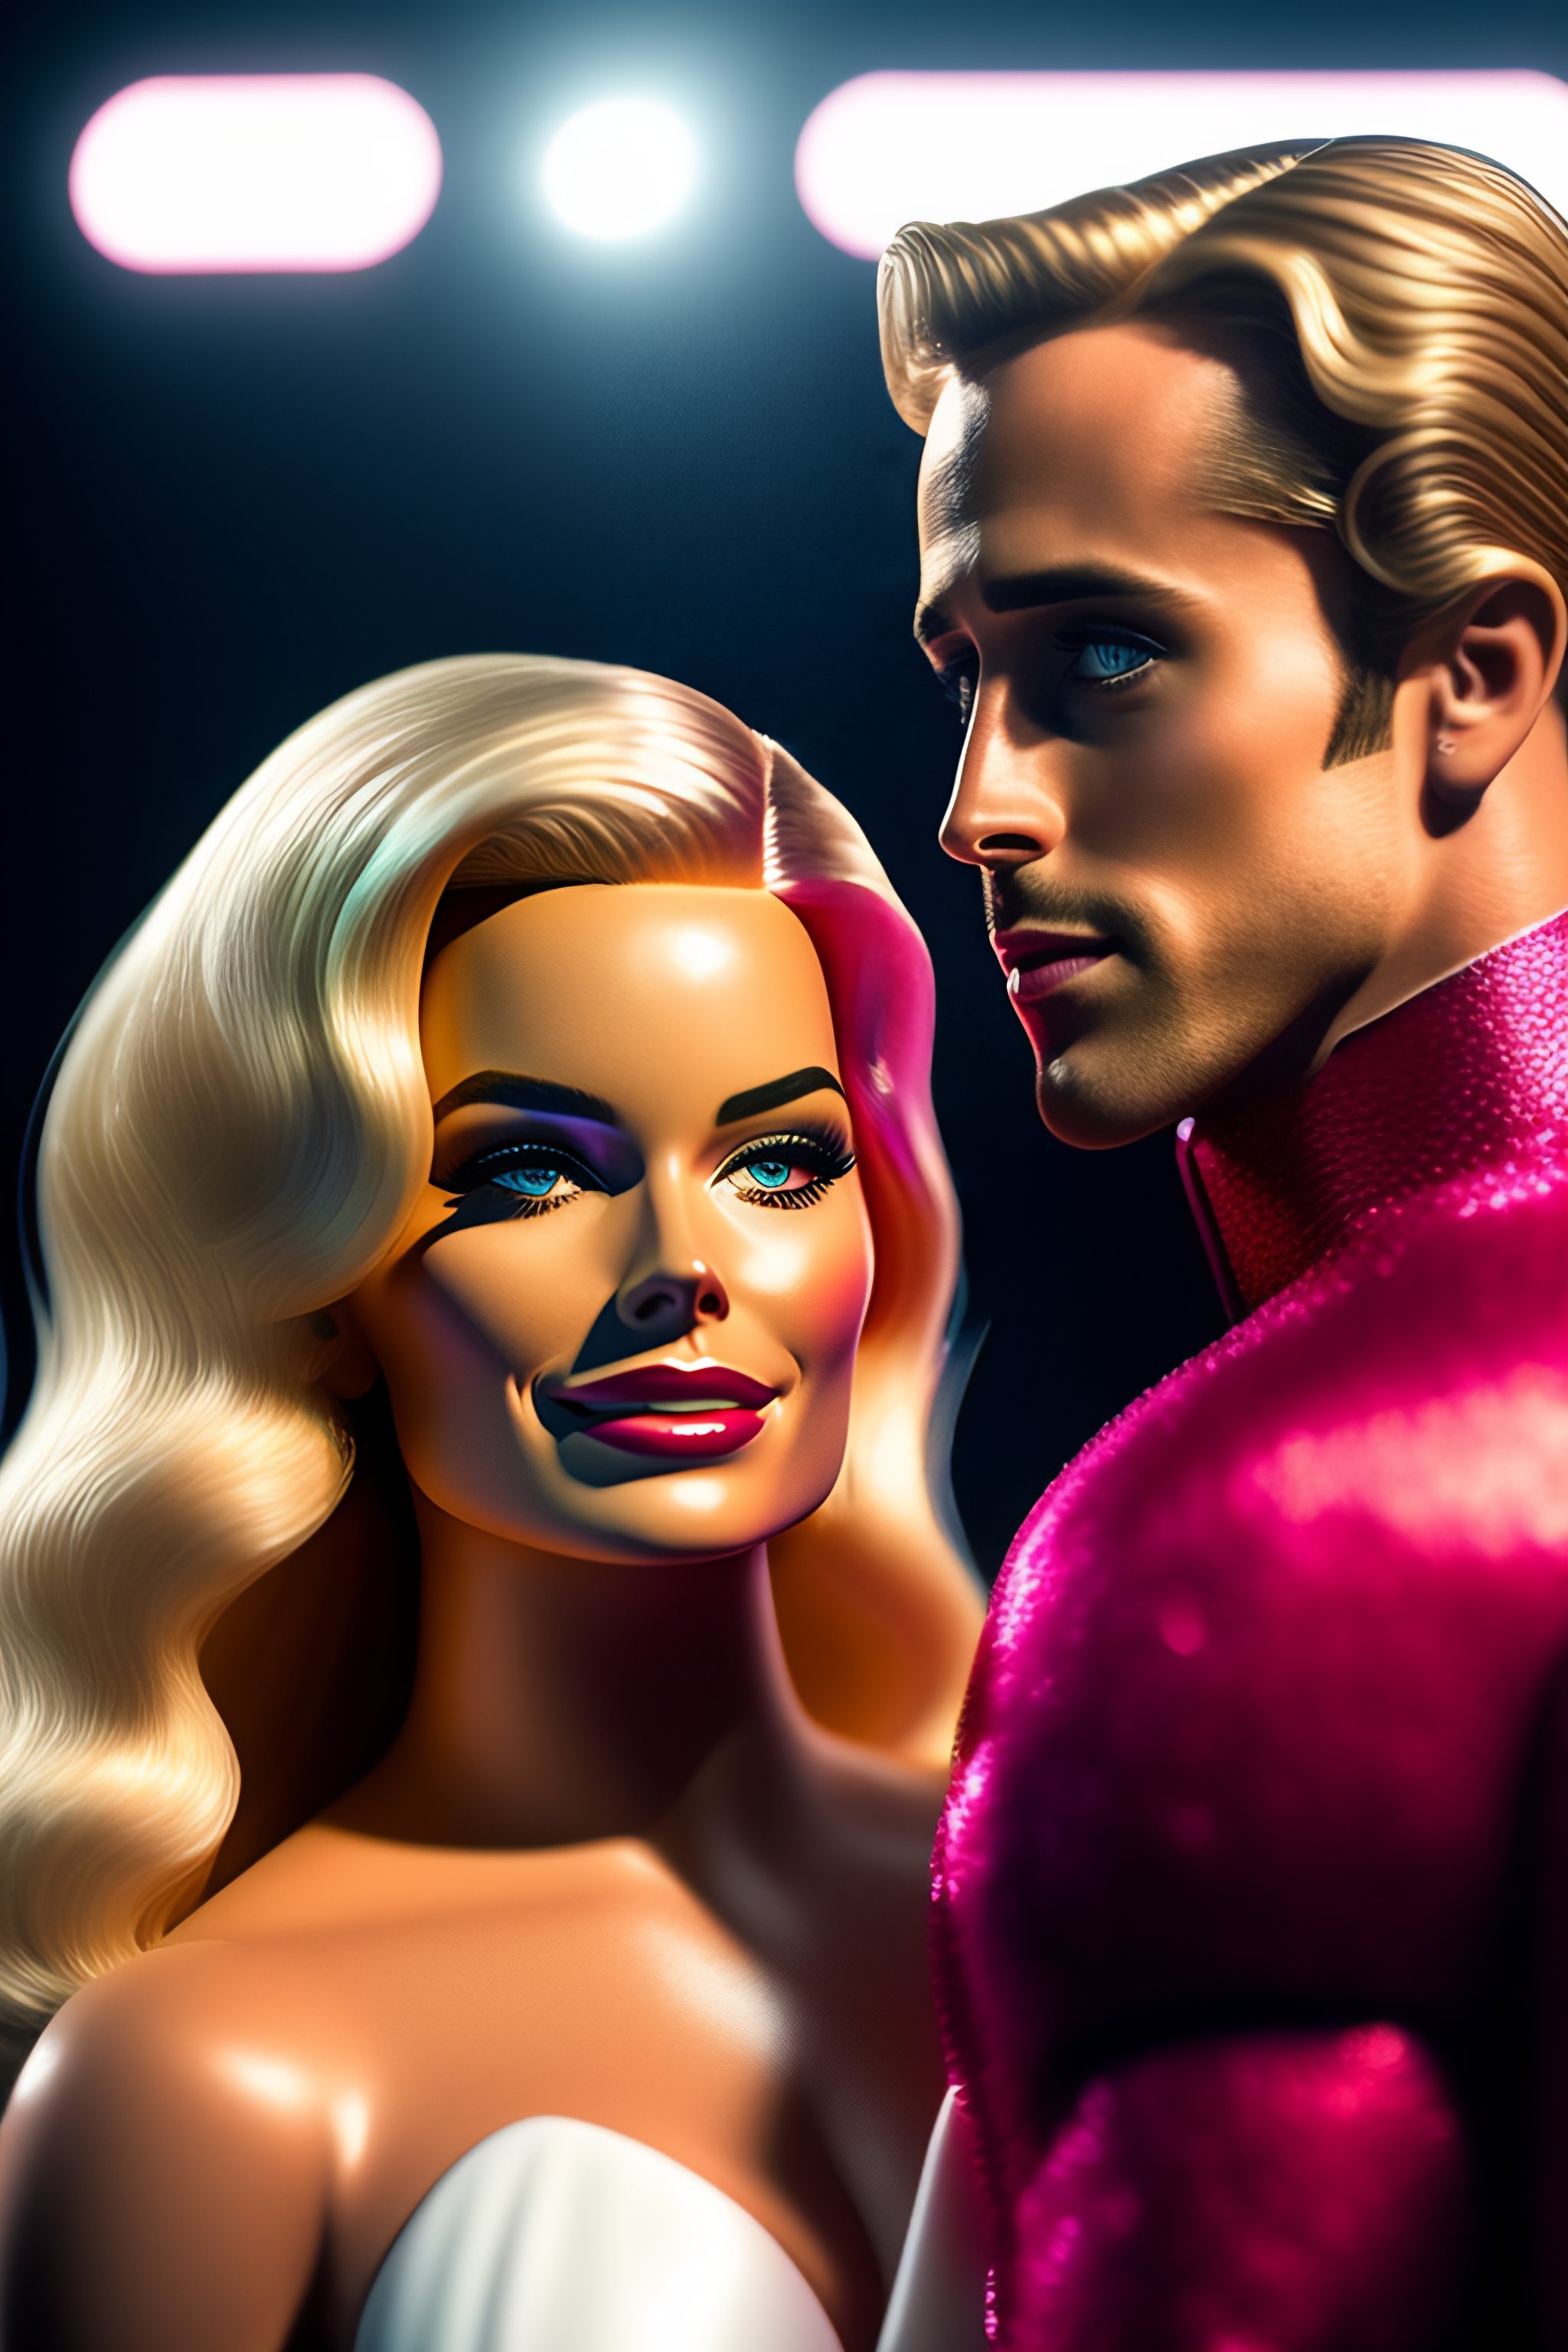 Ryan Gosling is Ken in new photo from Barbie movie